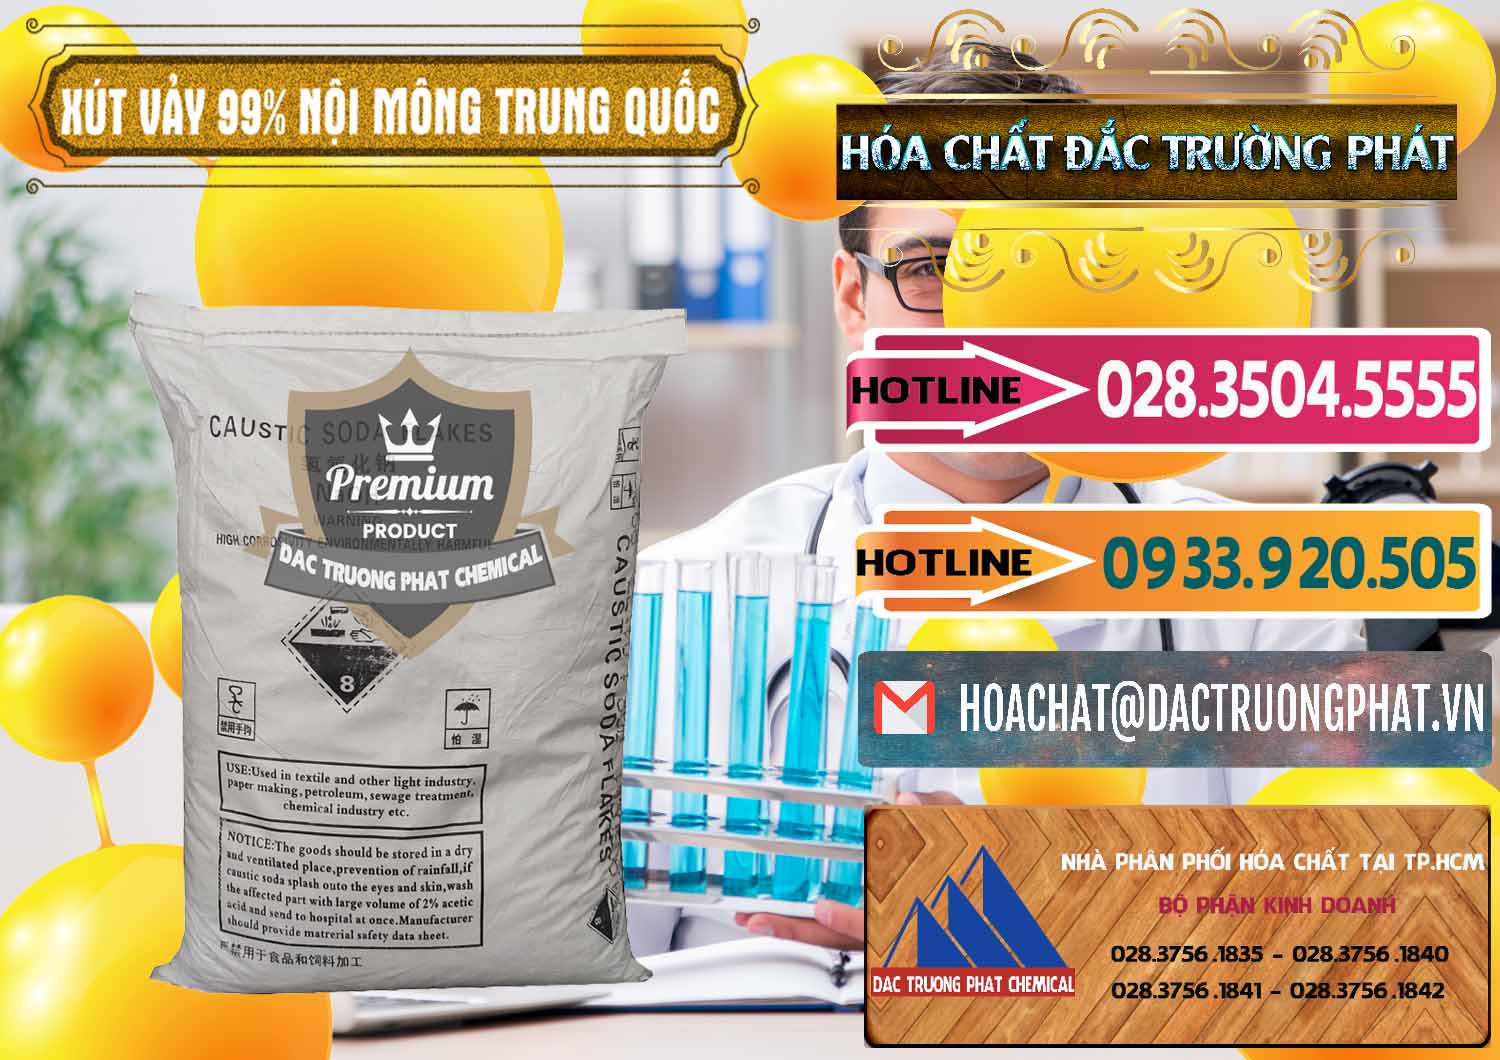 Đơn vị chuyên bán ( phân phối ) Xút Vảy - NaOH Vảy 99% Nội Mông Trung Quốc China - 0228 - Cty chuyên bán & cung cấp hóa chất tại TP.HCM - dactruongphat.vn